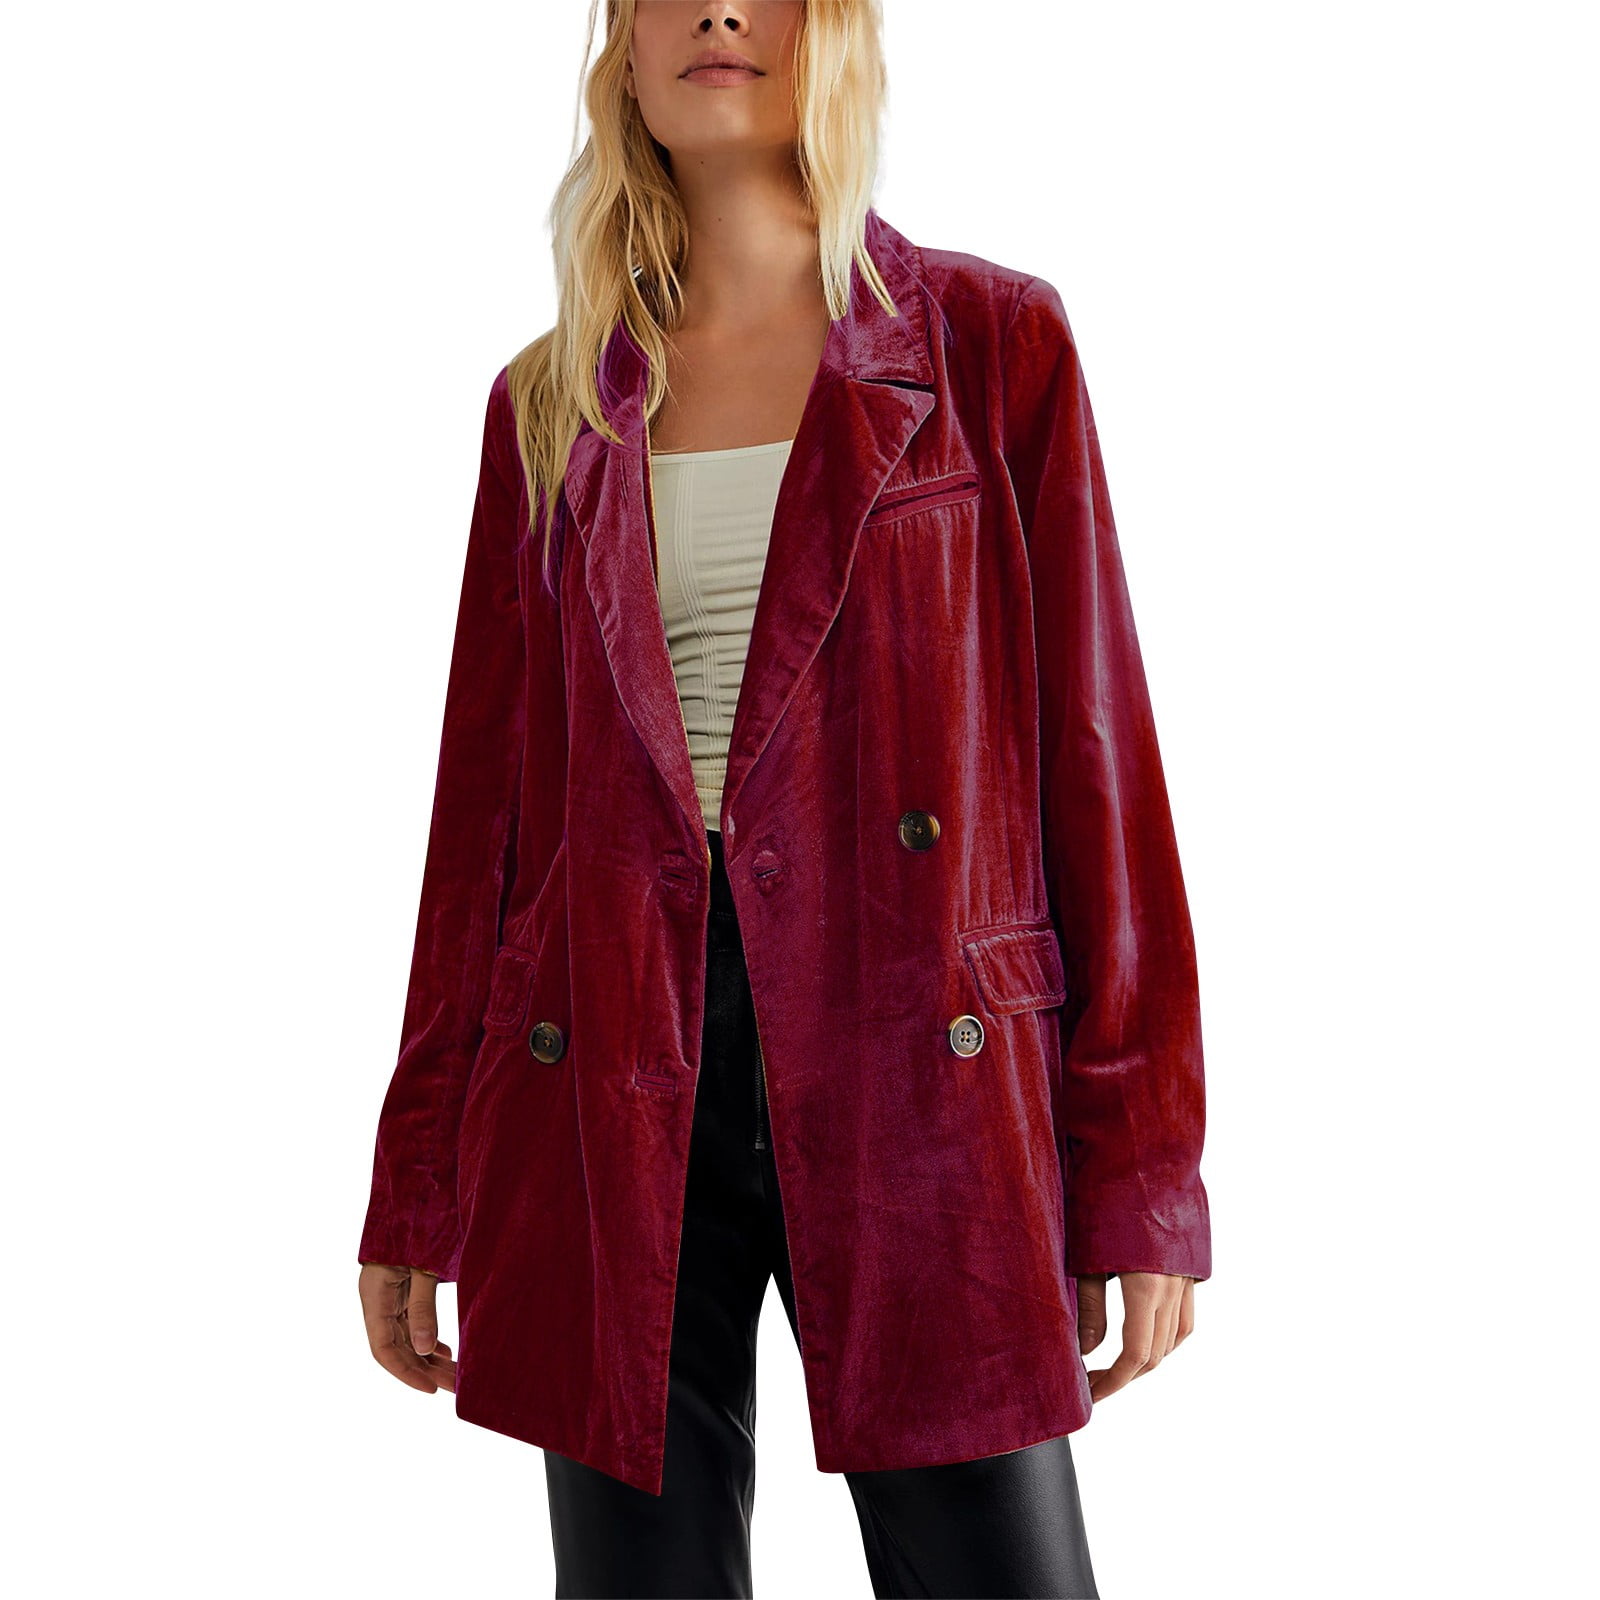 Women's Velvet Blazer Jacket in Dark Green/Khaki/Red Stylish Outerwear |  eBay-mncb.edu.vn